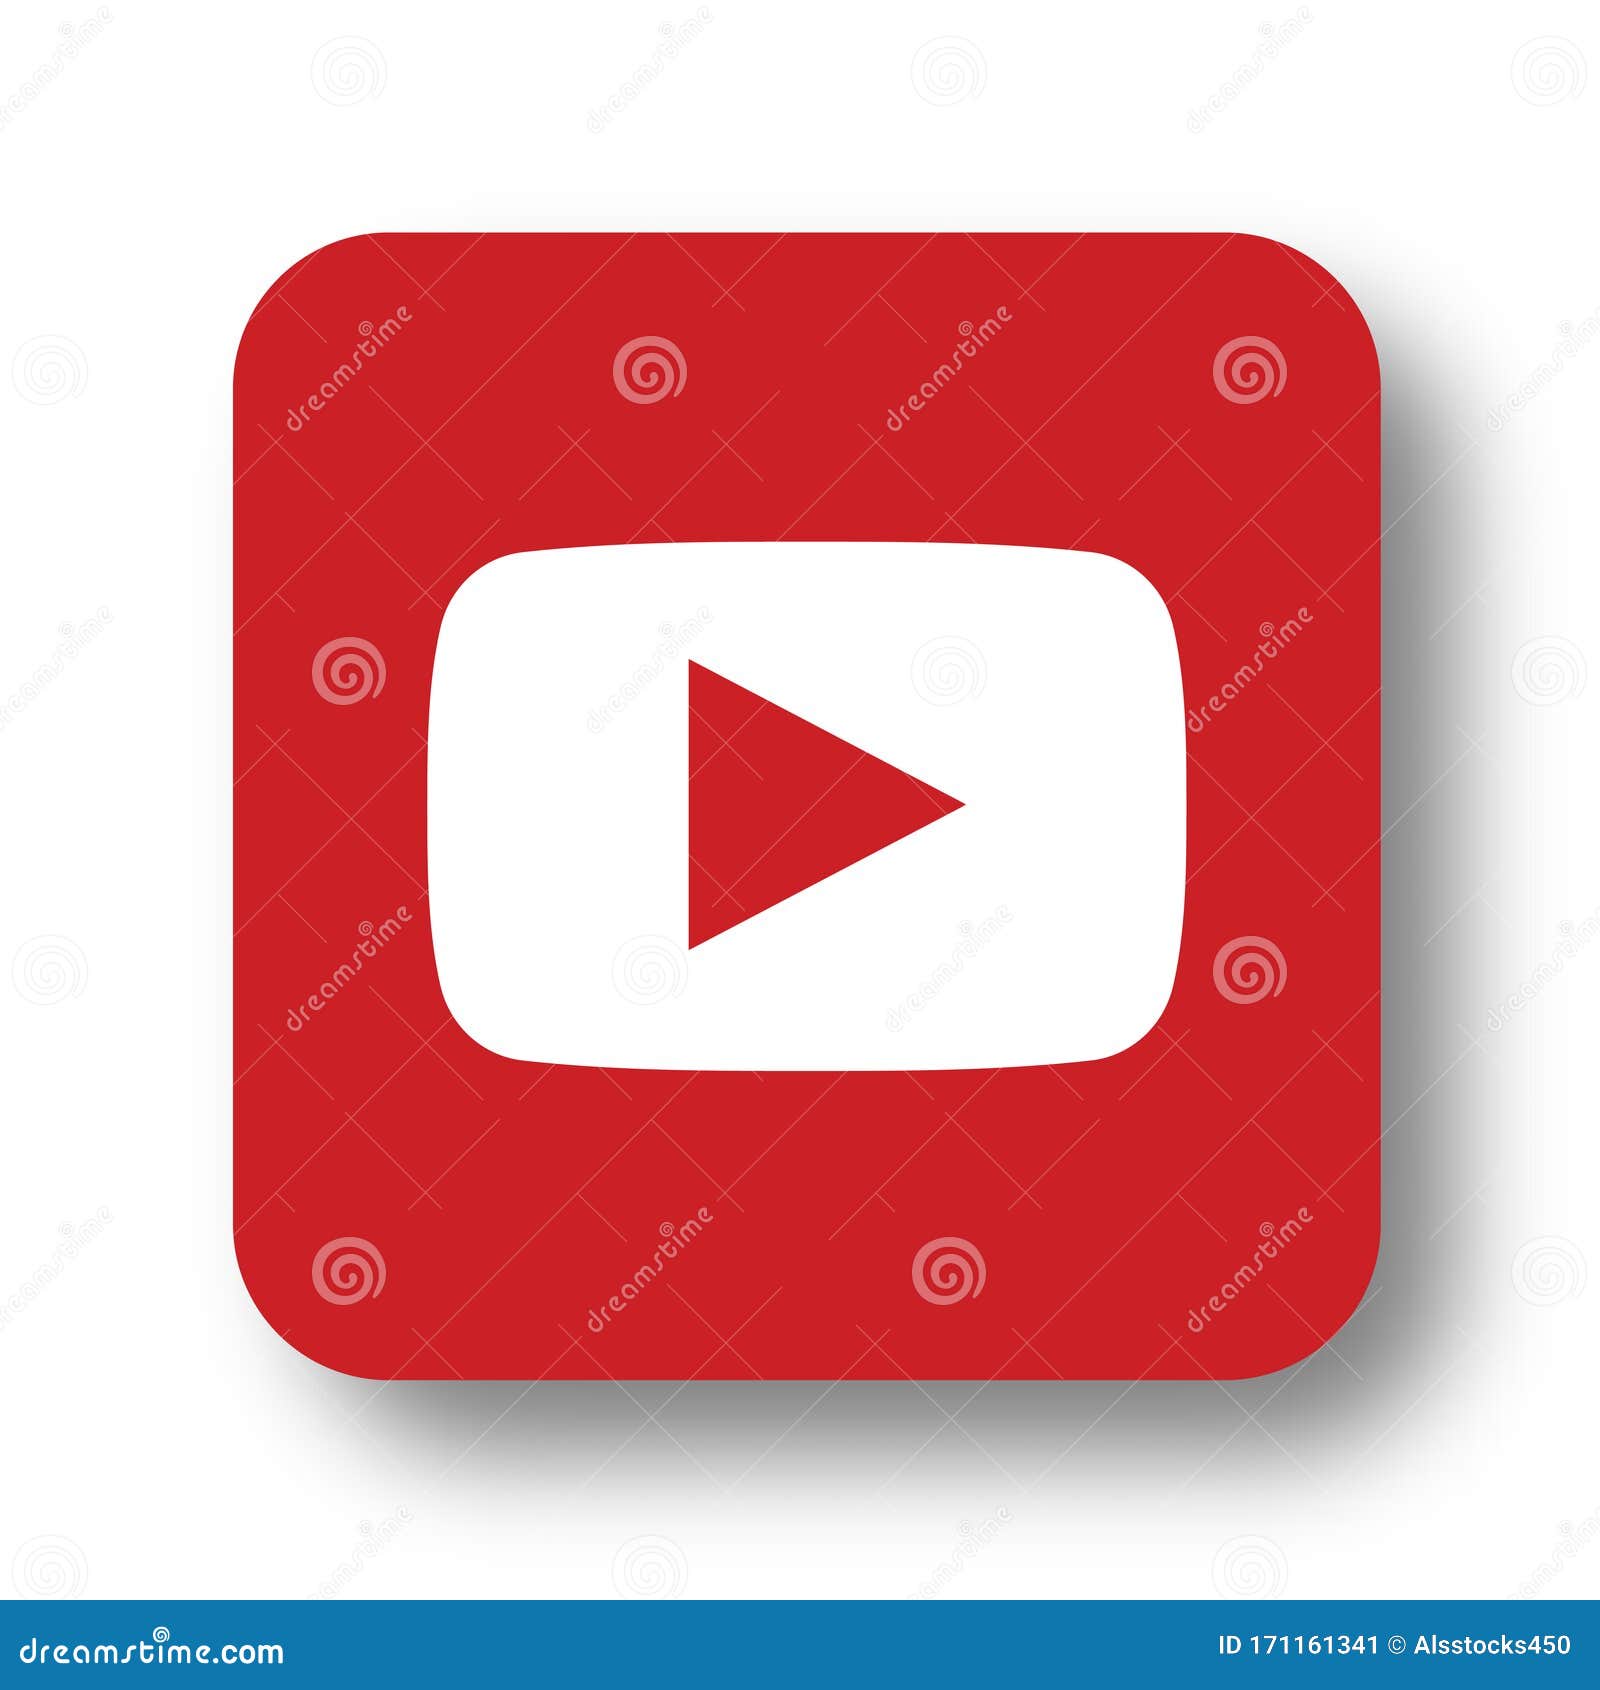 Youtube logo icon editorial photo. Illustration of badge - 171161341